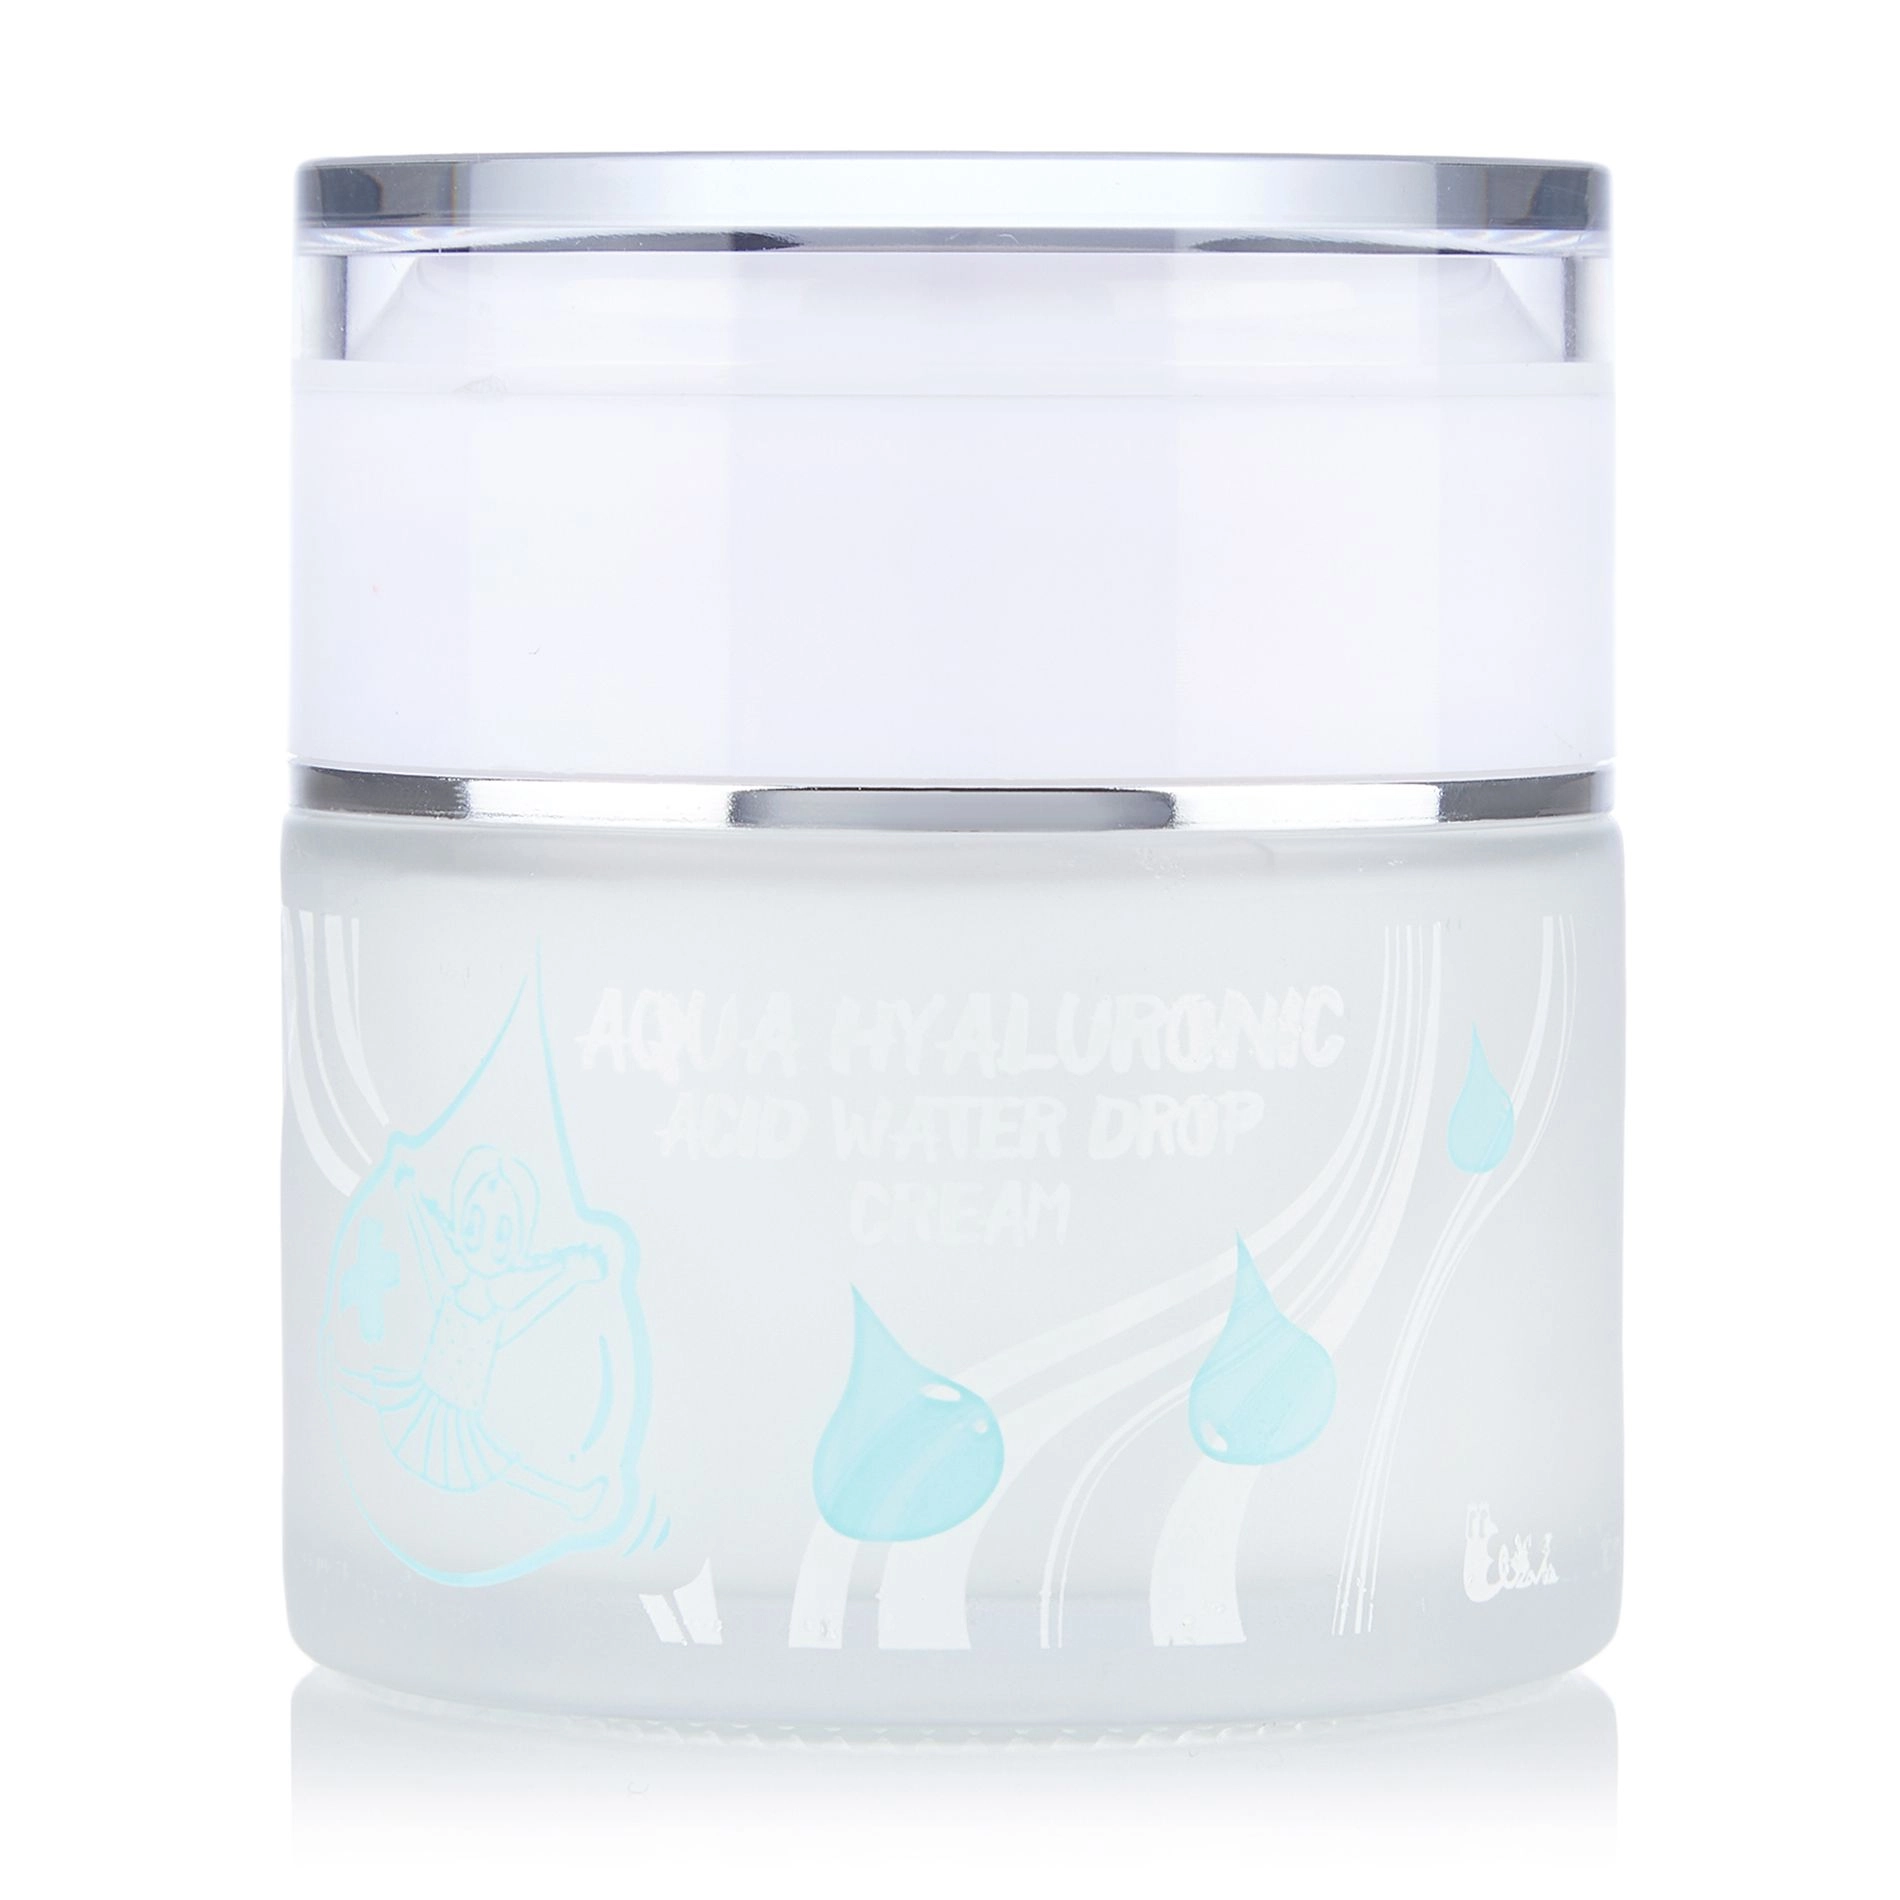 Крем для лица увлажняющий гиалуроновый - Elizavecca Face Care Aqua Hyaluronic Acid Water Drop Cream, 50 мл - фото N9